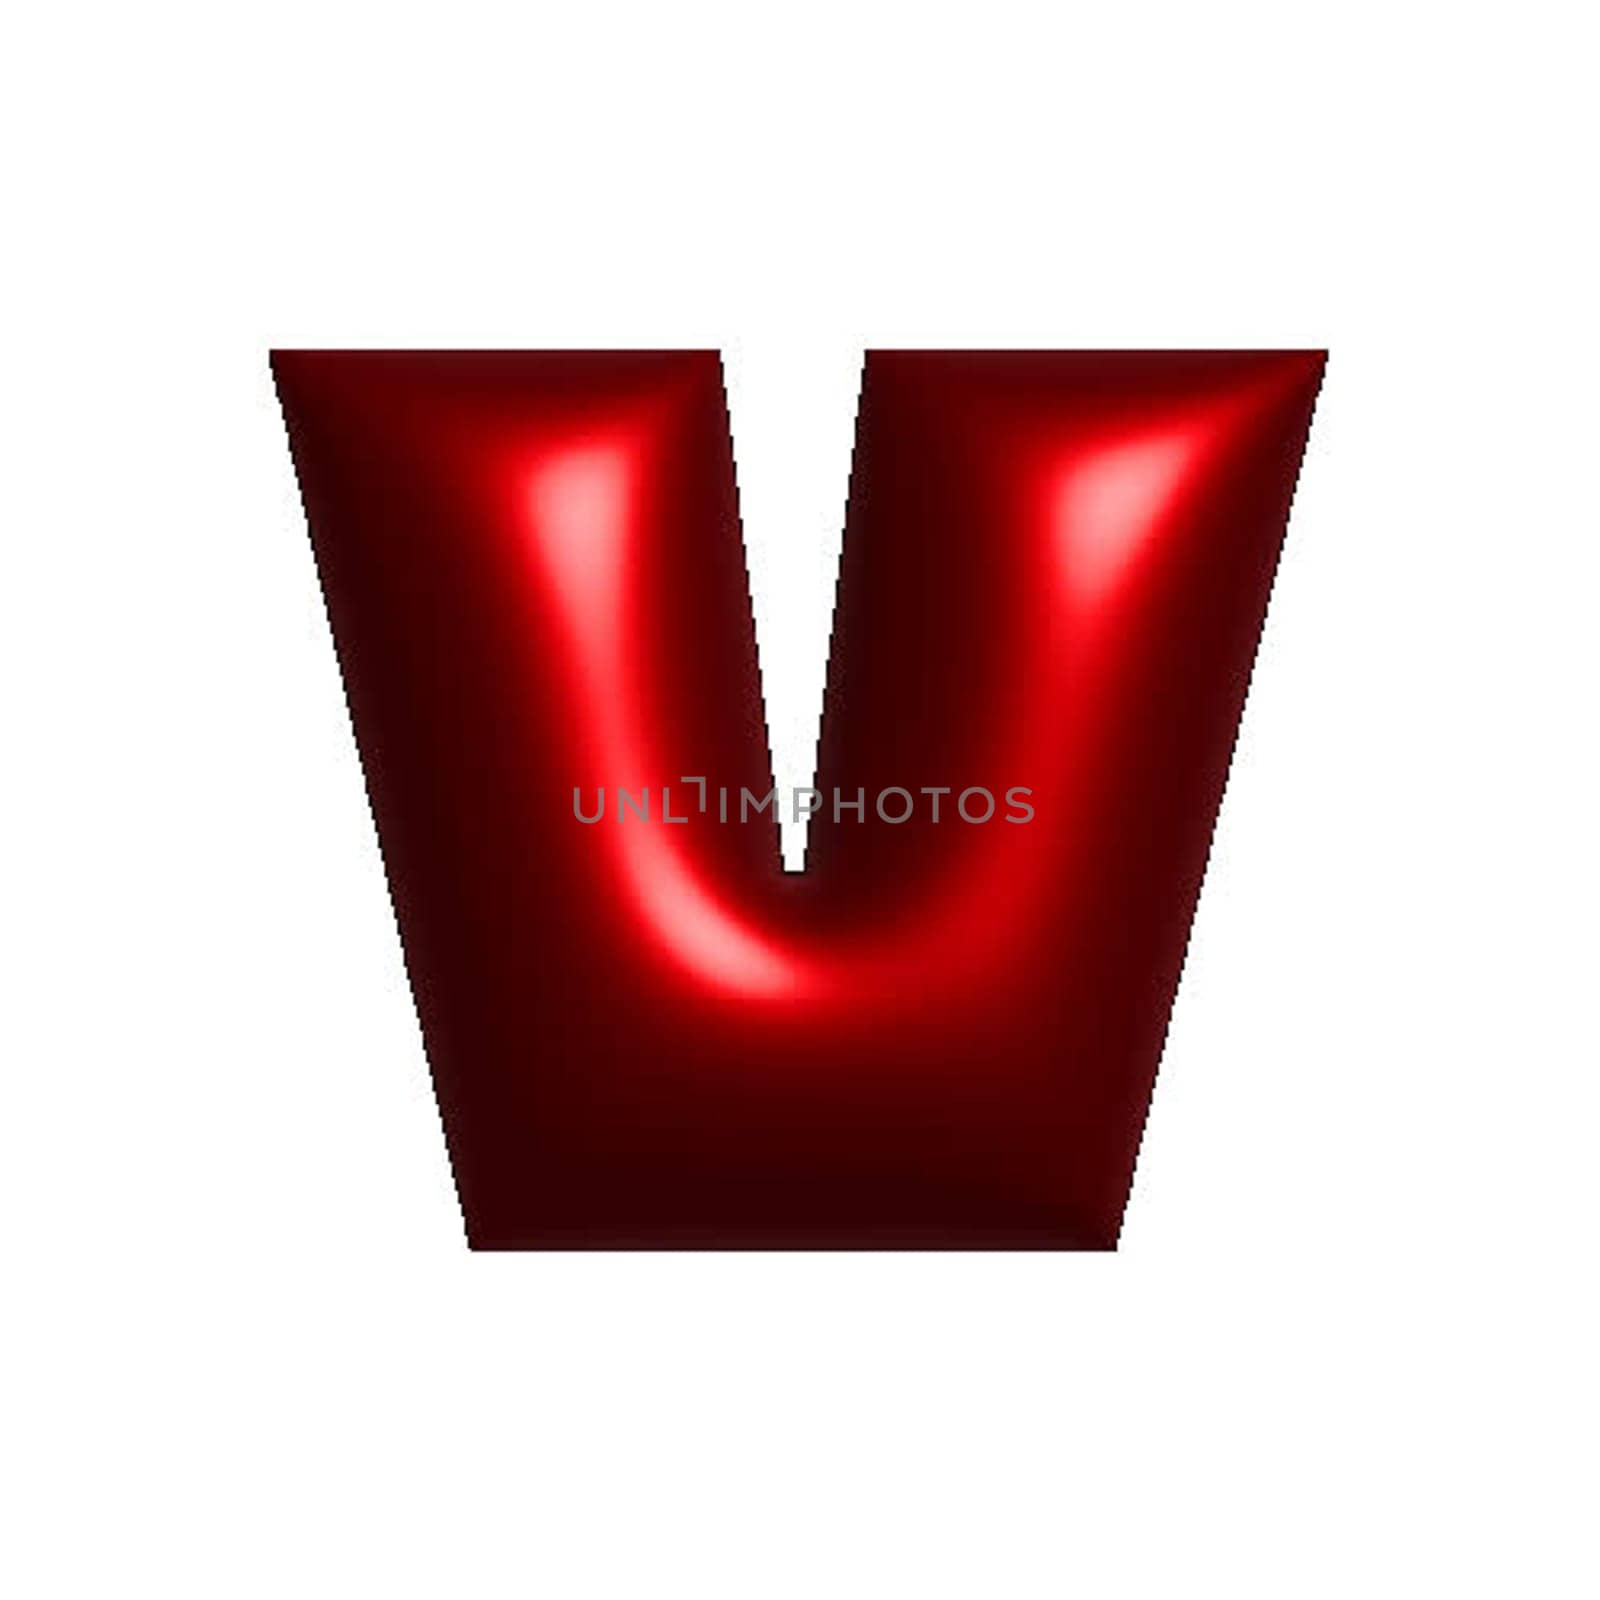 Red metal shiny reflective letter V 3D illustration by Dustick